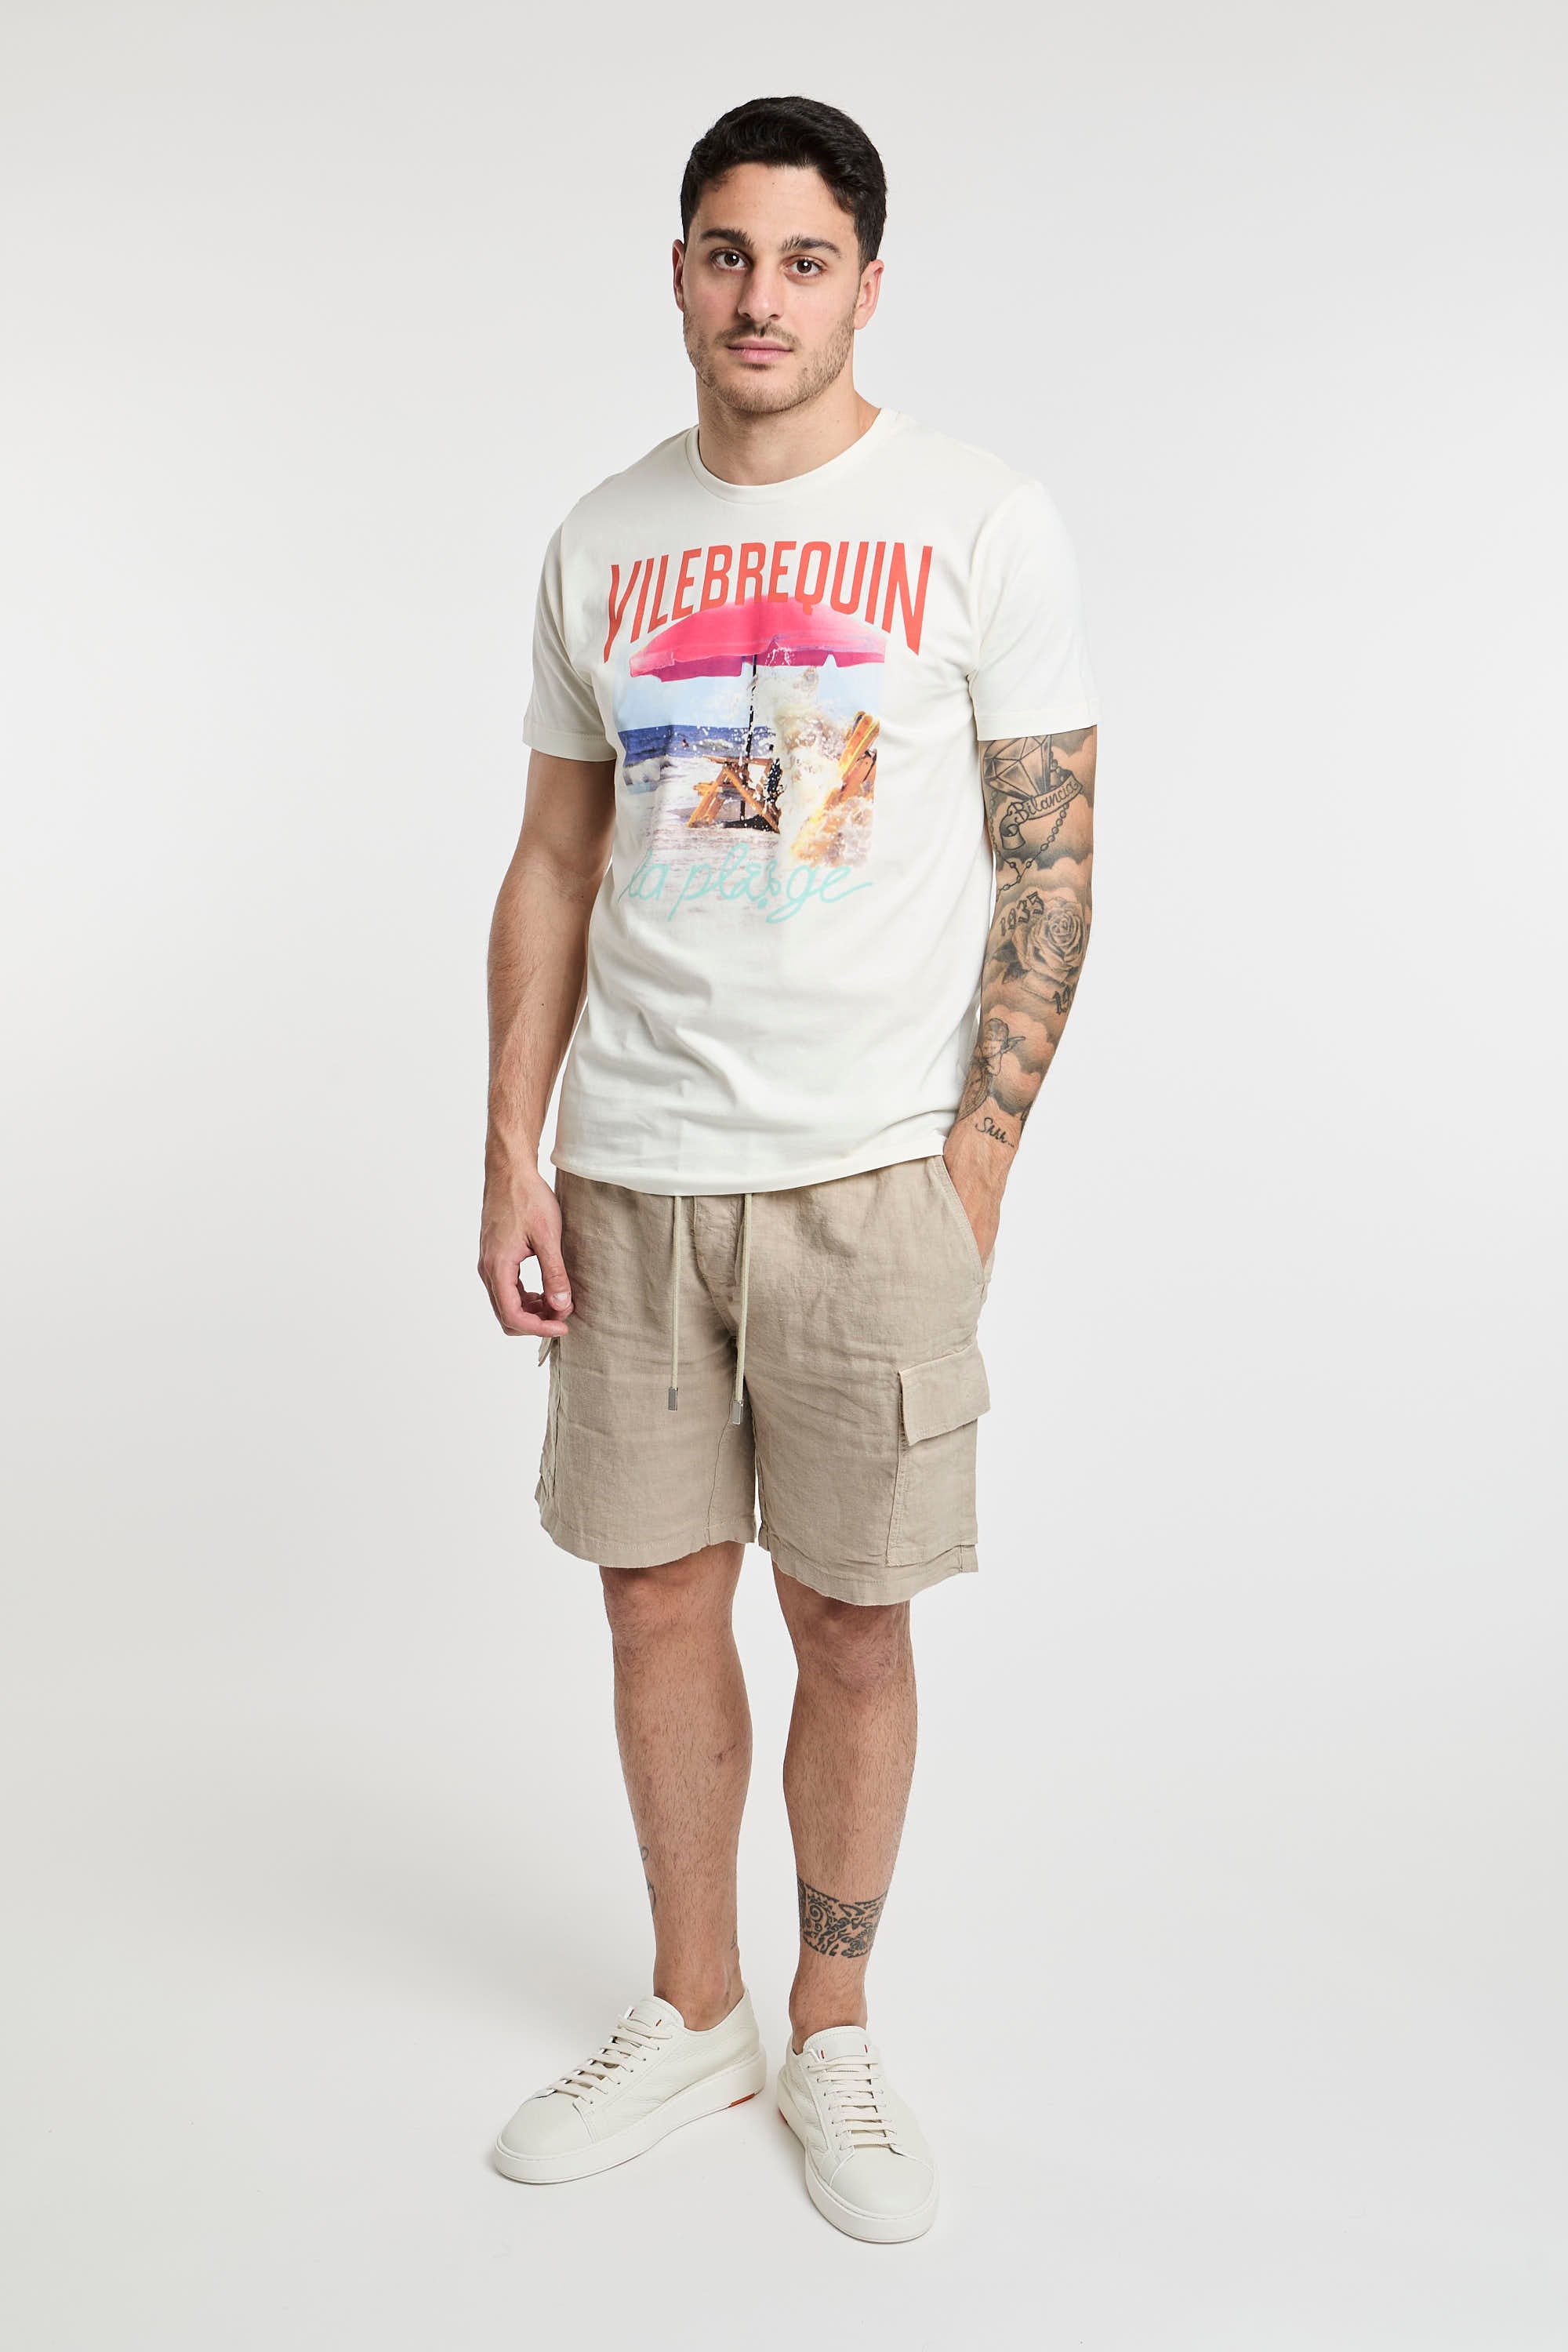 Vilebrequin T-Shirt mit Aufdruck Weißer Baumwolle-7